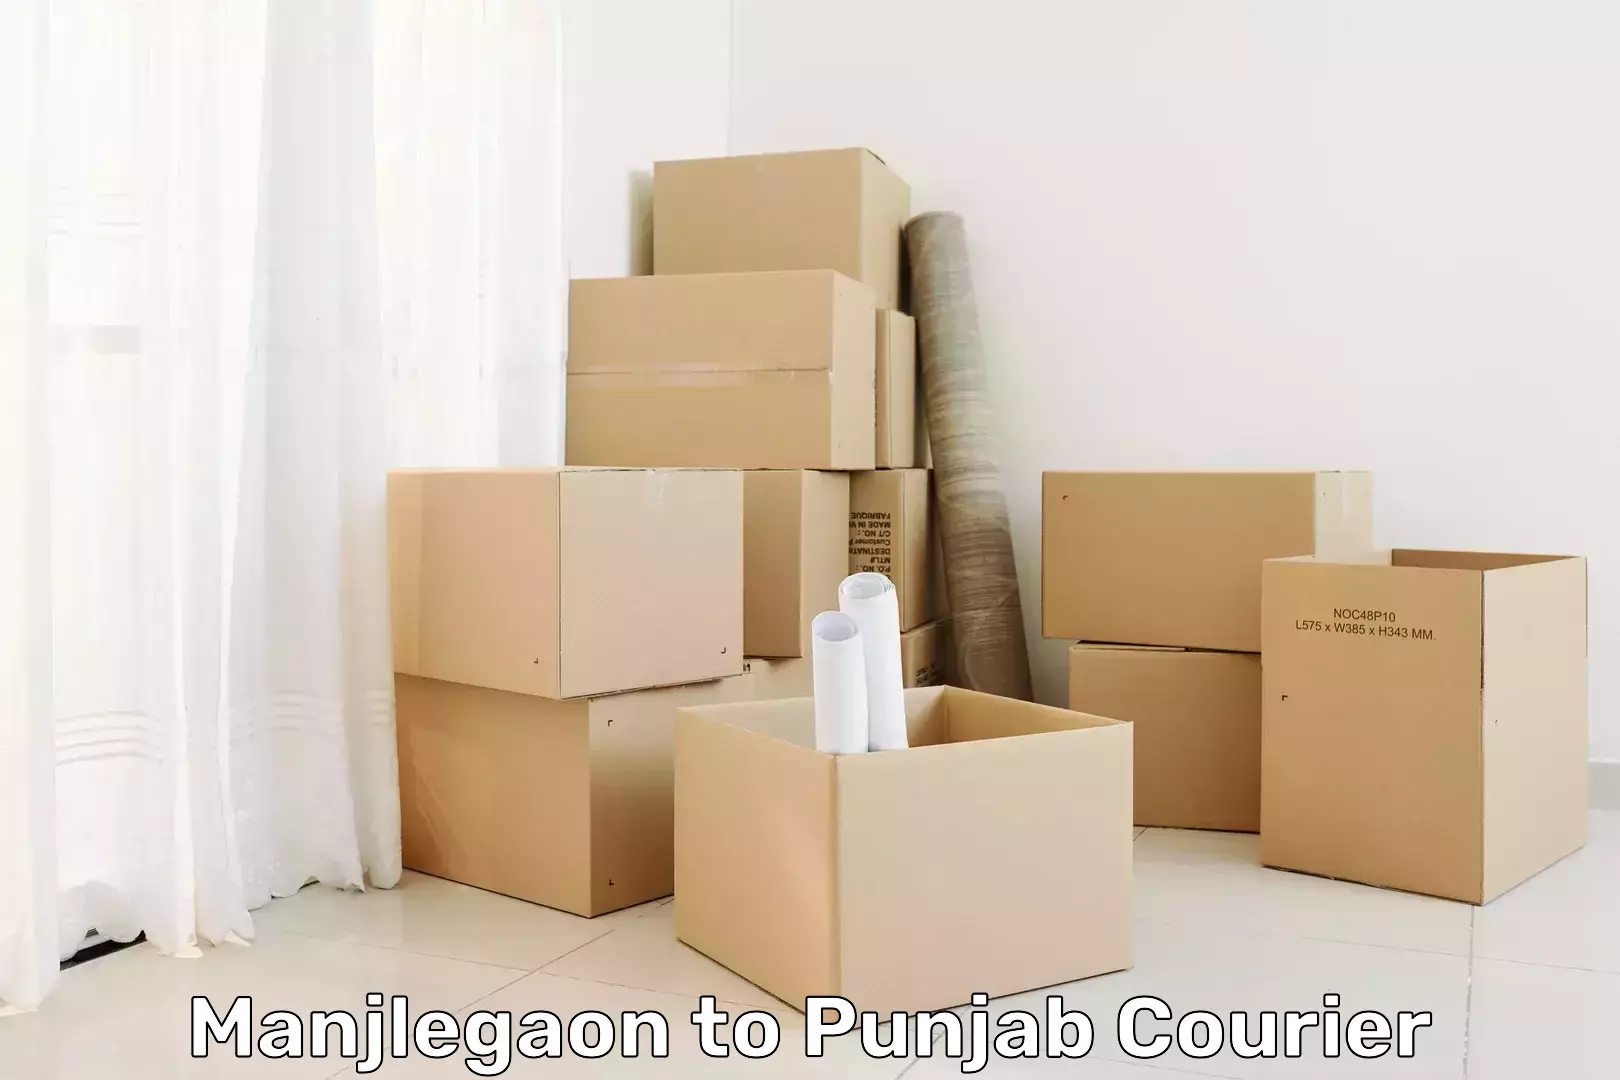 Regular parcel service Manjlegaon to Punjab